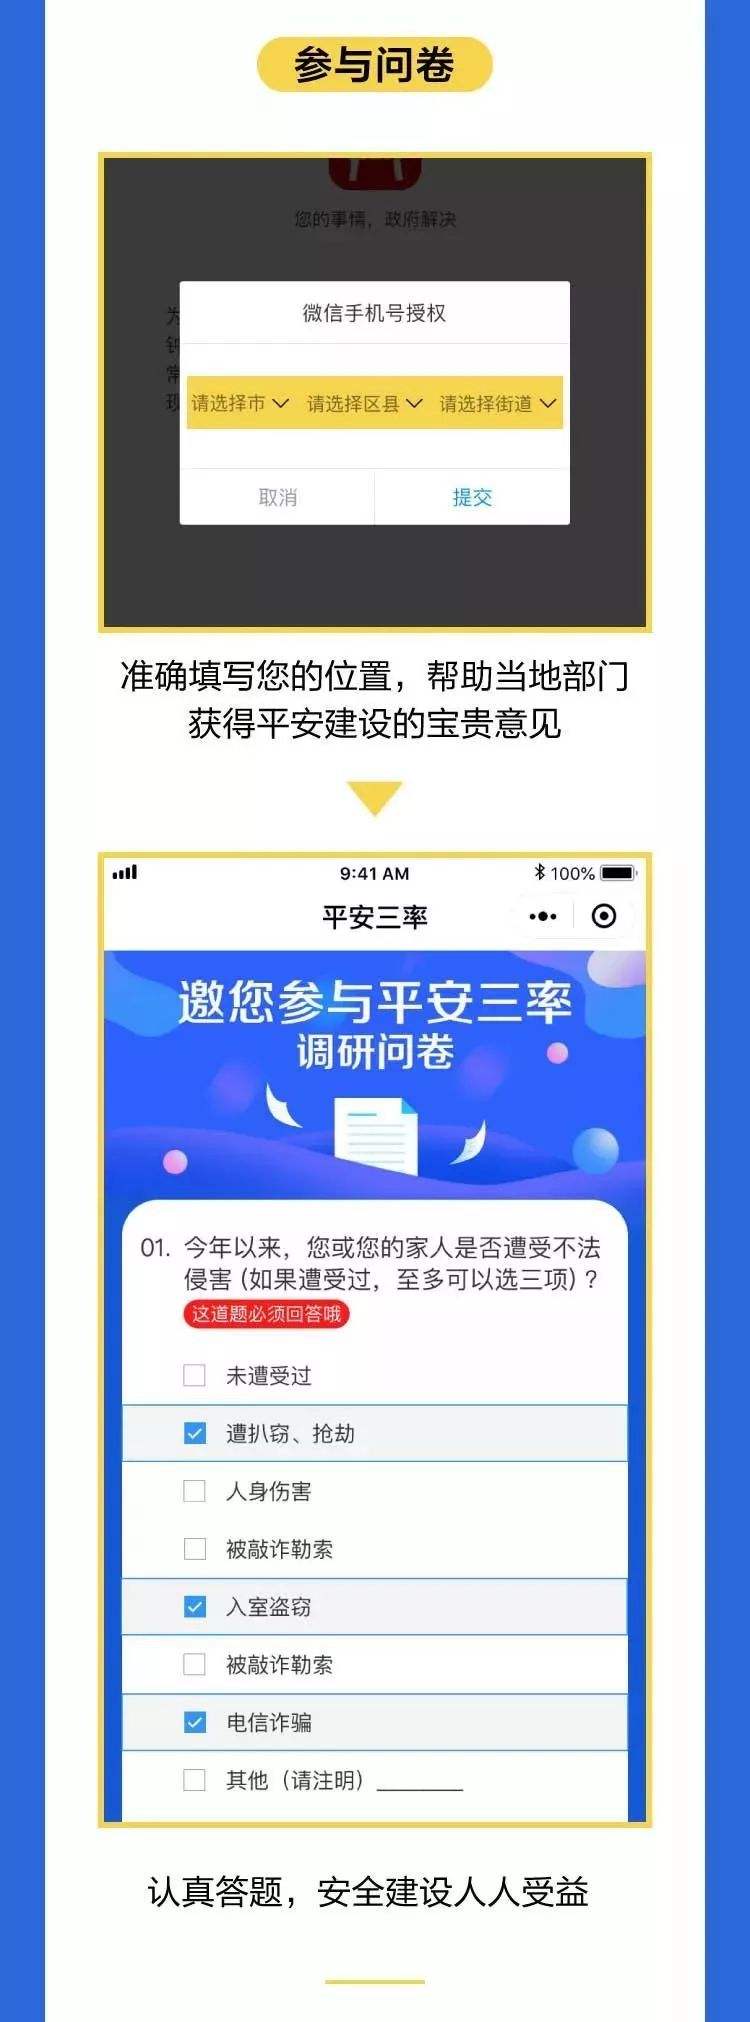 平安通浙江手机客户端平安保险公司app客户端下载